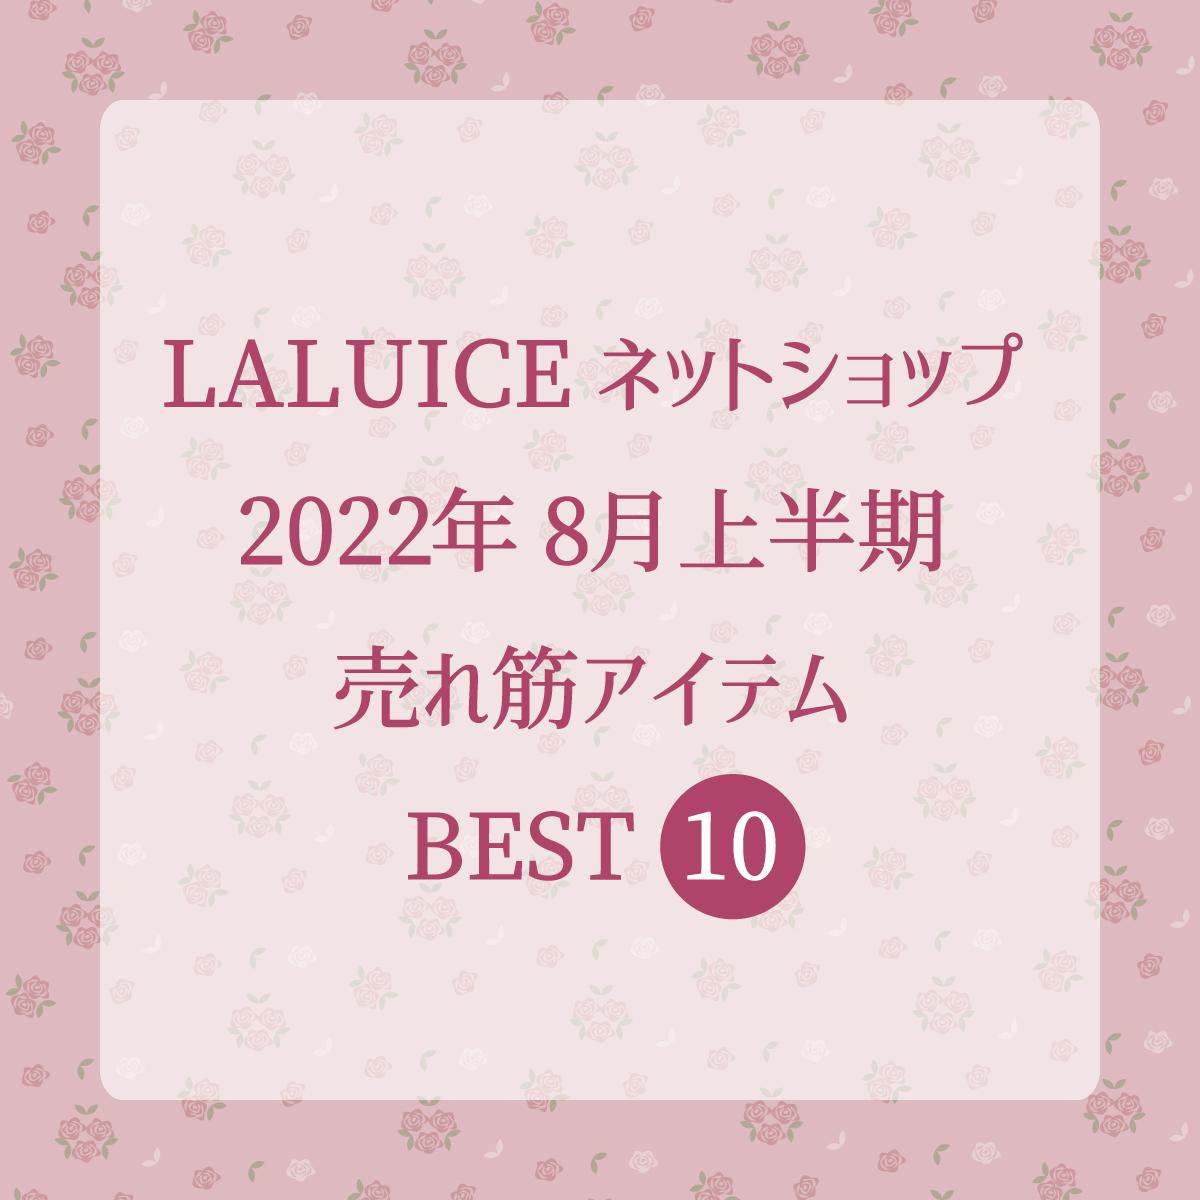 2022年8月上半期(8/1～8/15) LALUICEネットショップ売れ筋アイテム BEST10